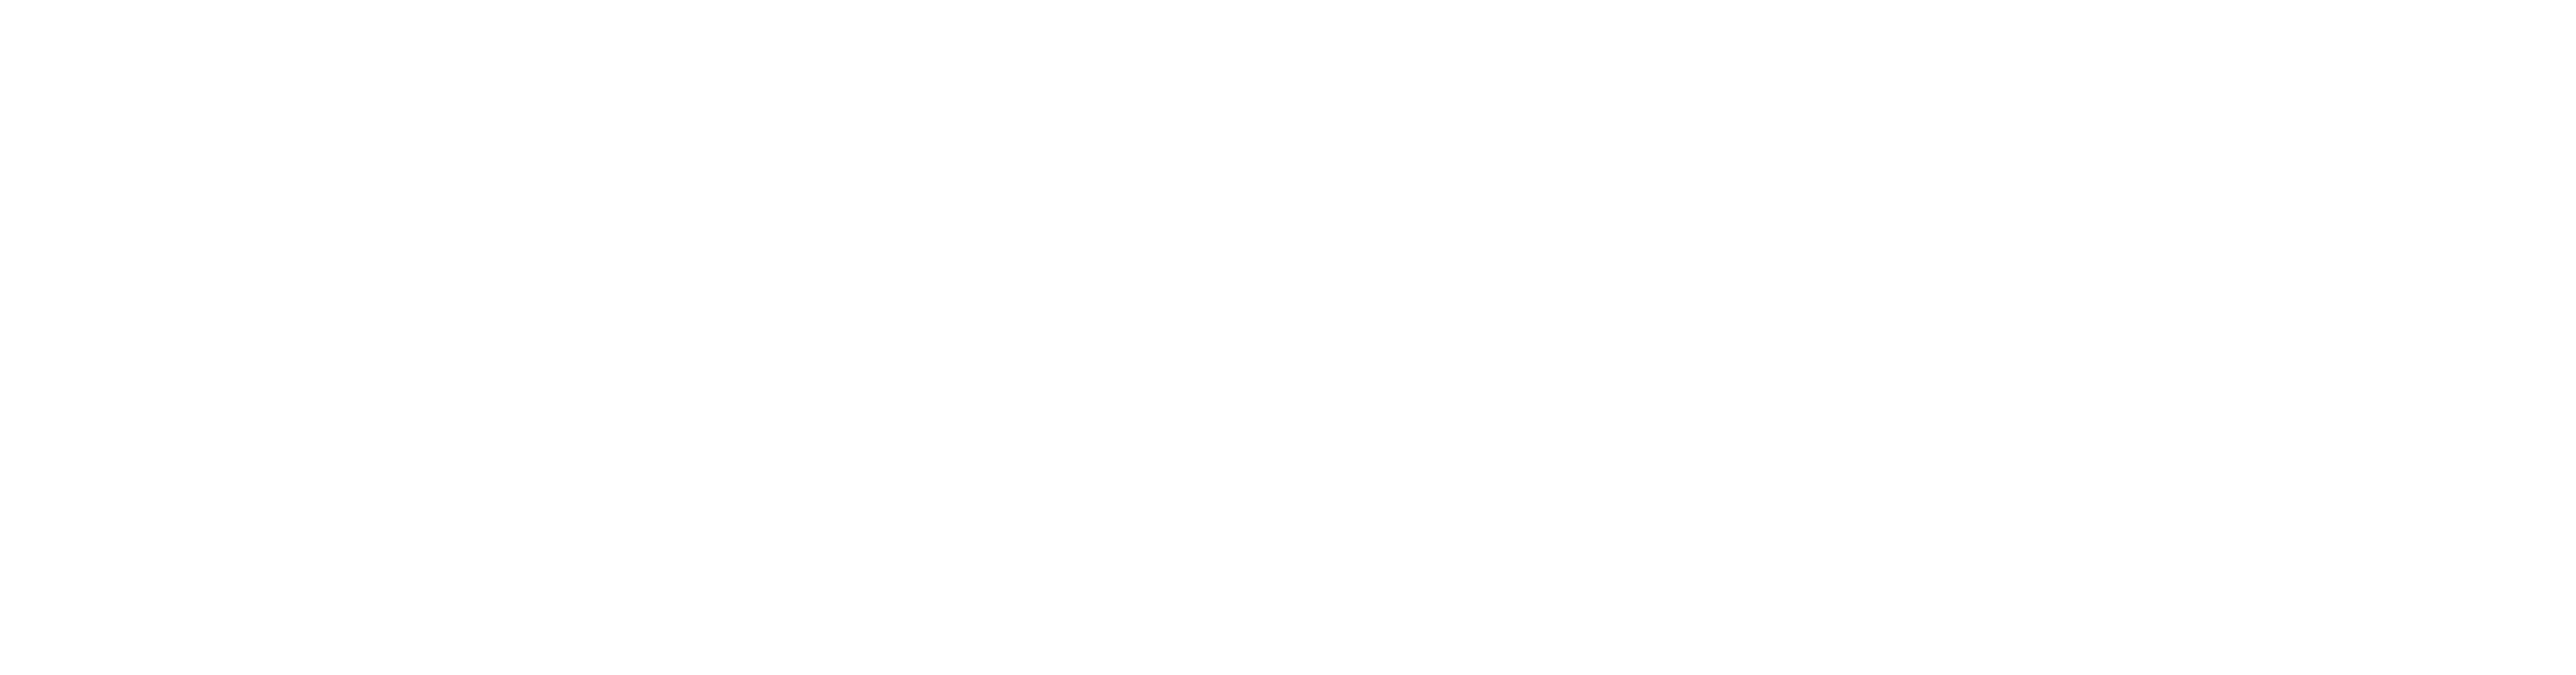 TechRunner-IT-Logo-Horizontal-White